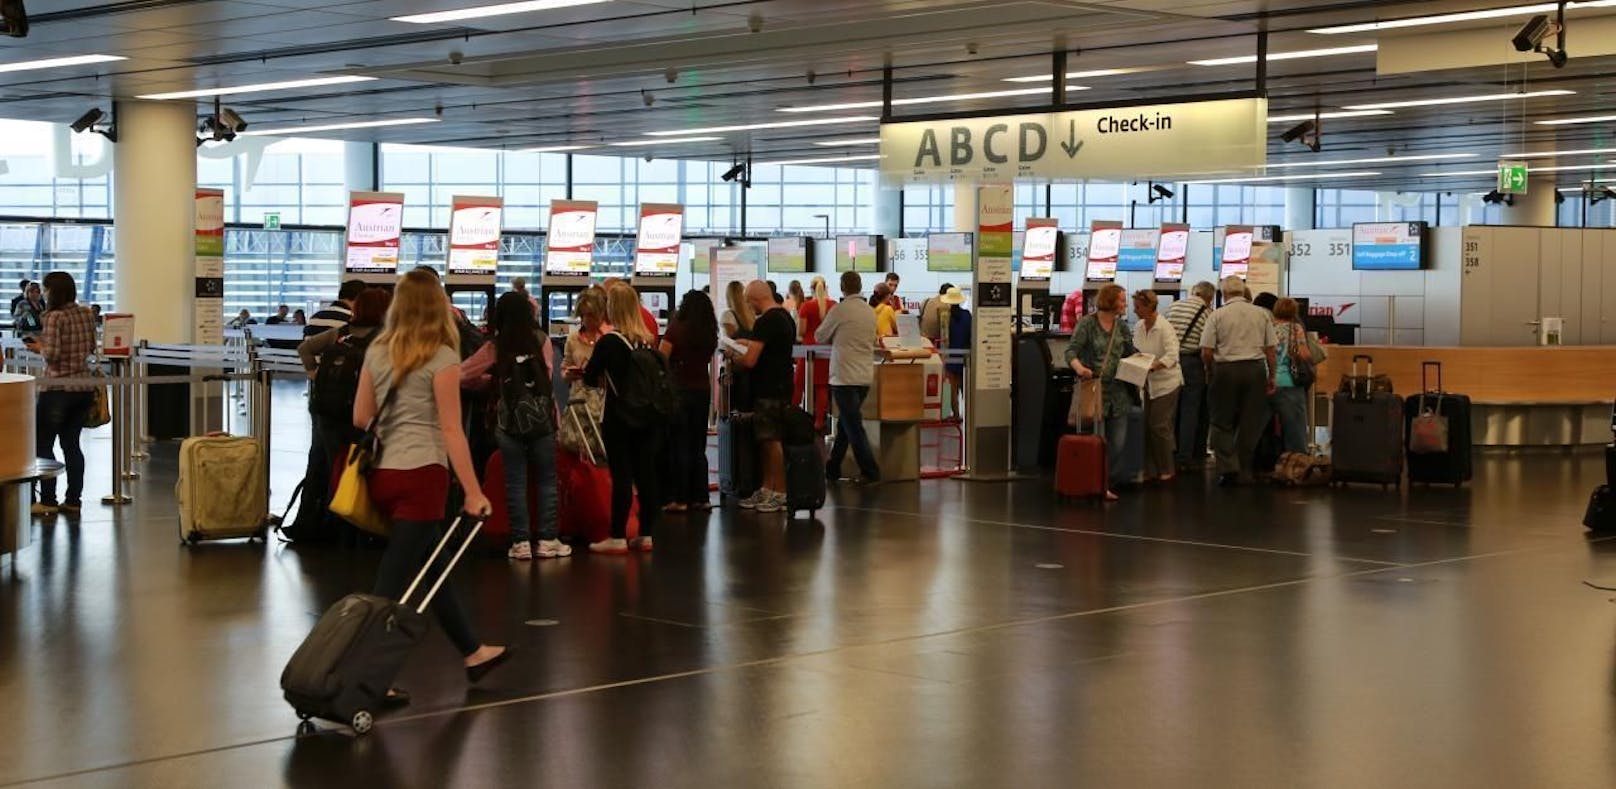 Flughafen Wien Schwechat - Check In Terminal